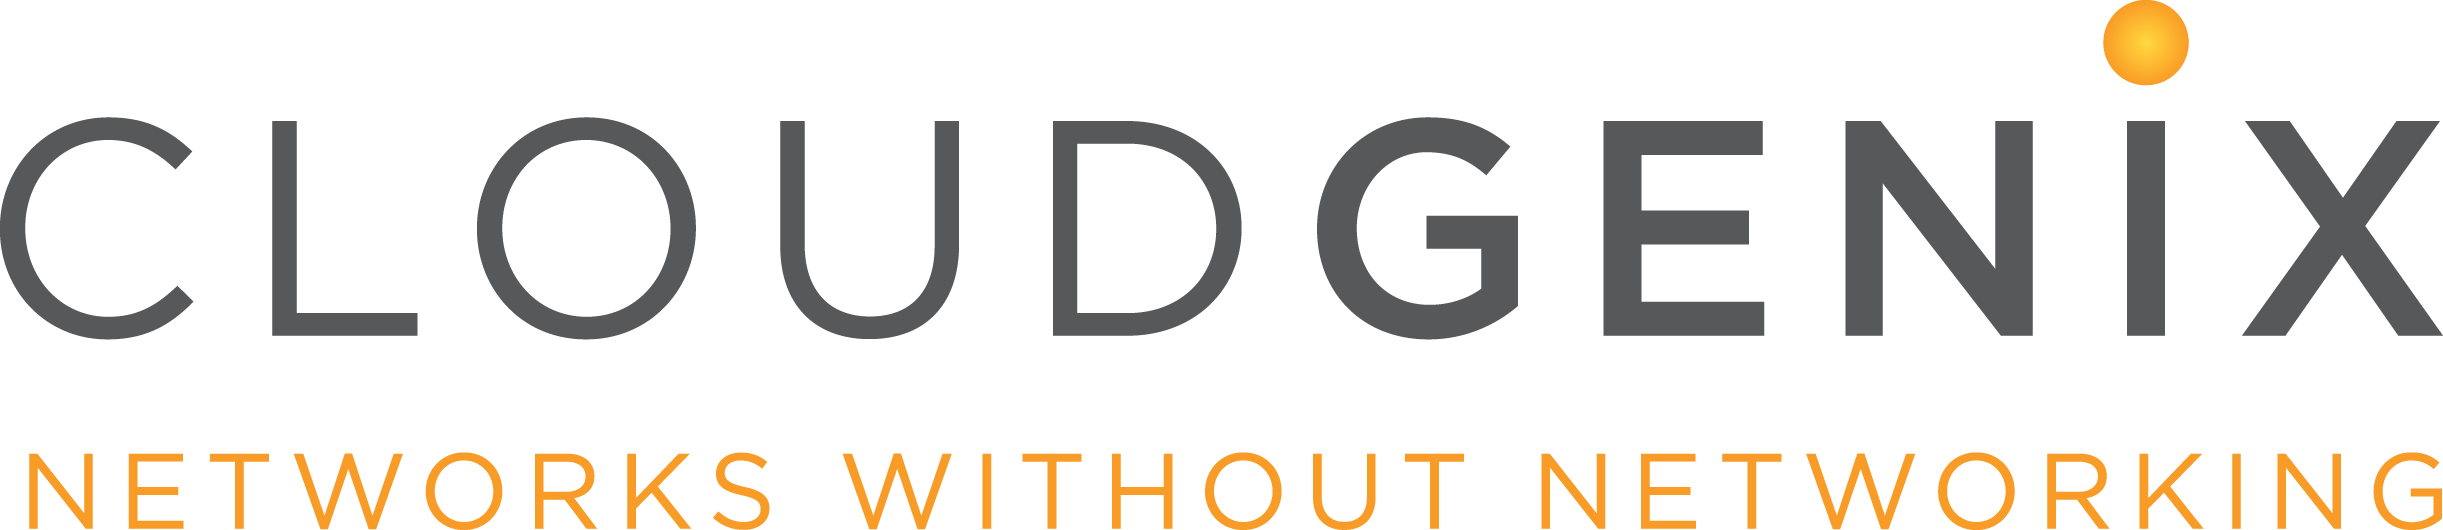 CloudGenix logo.png